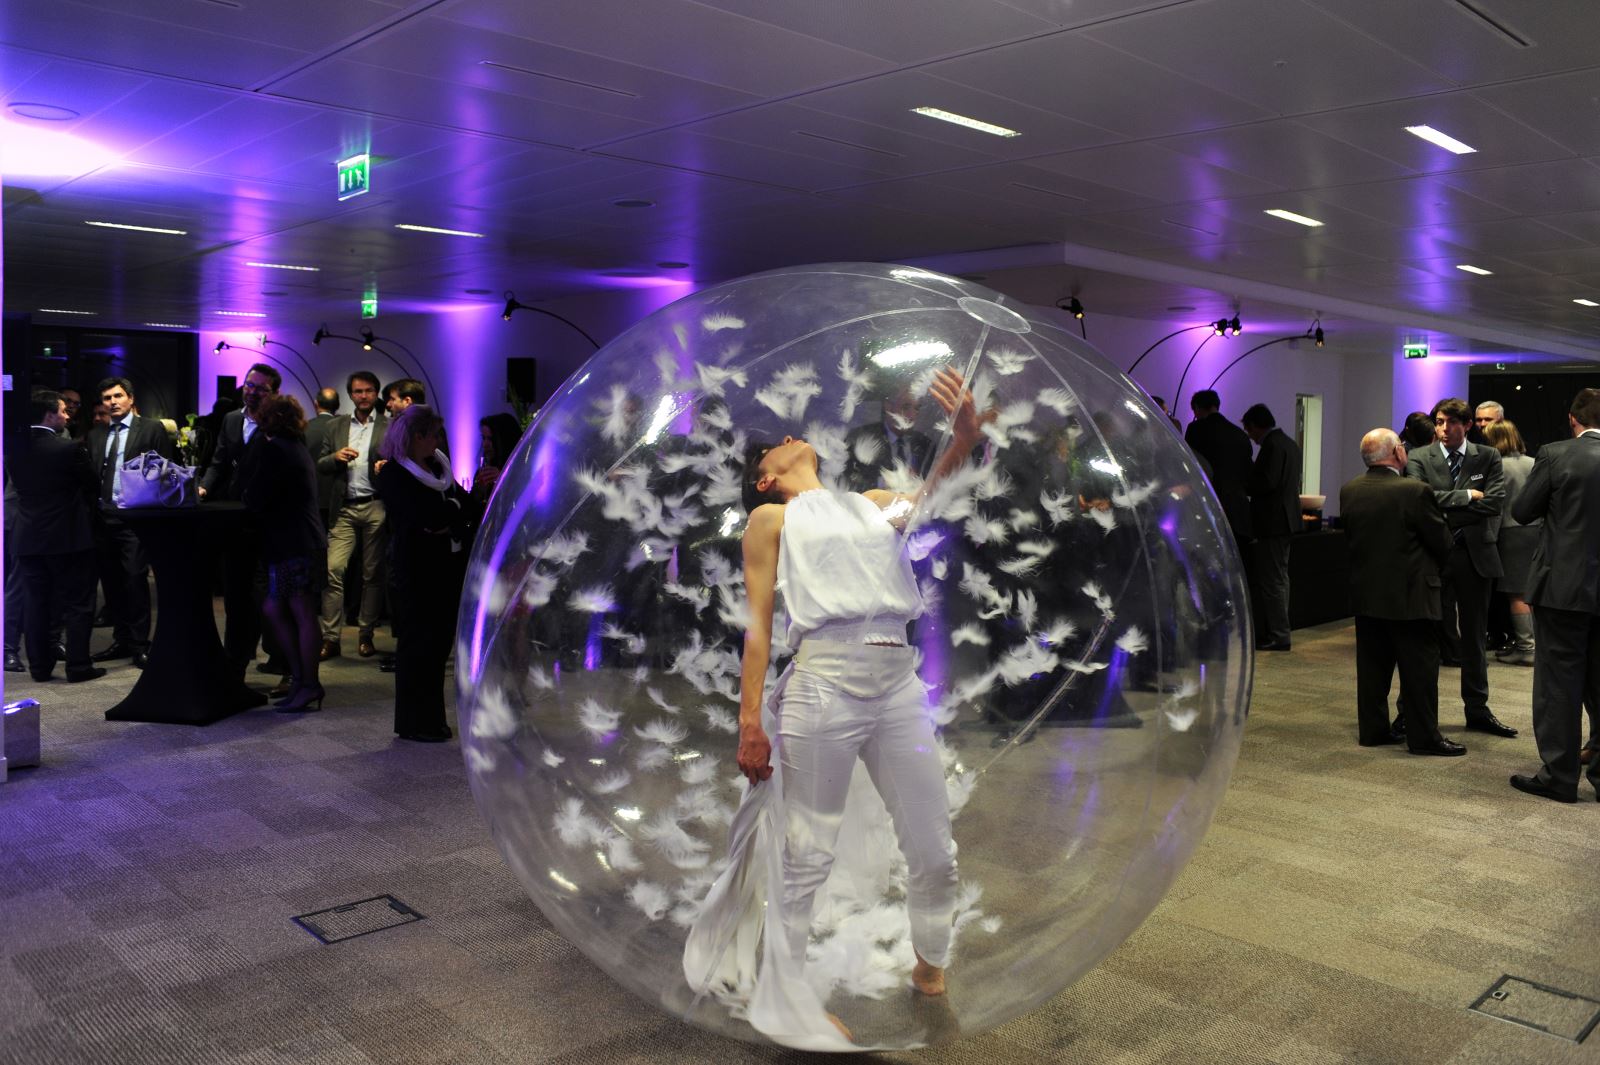 danseuse dans une bulle